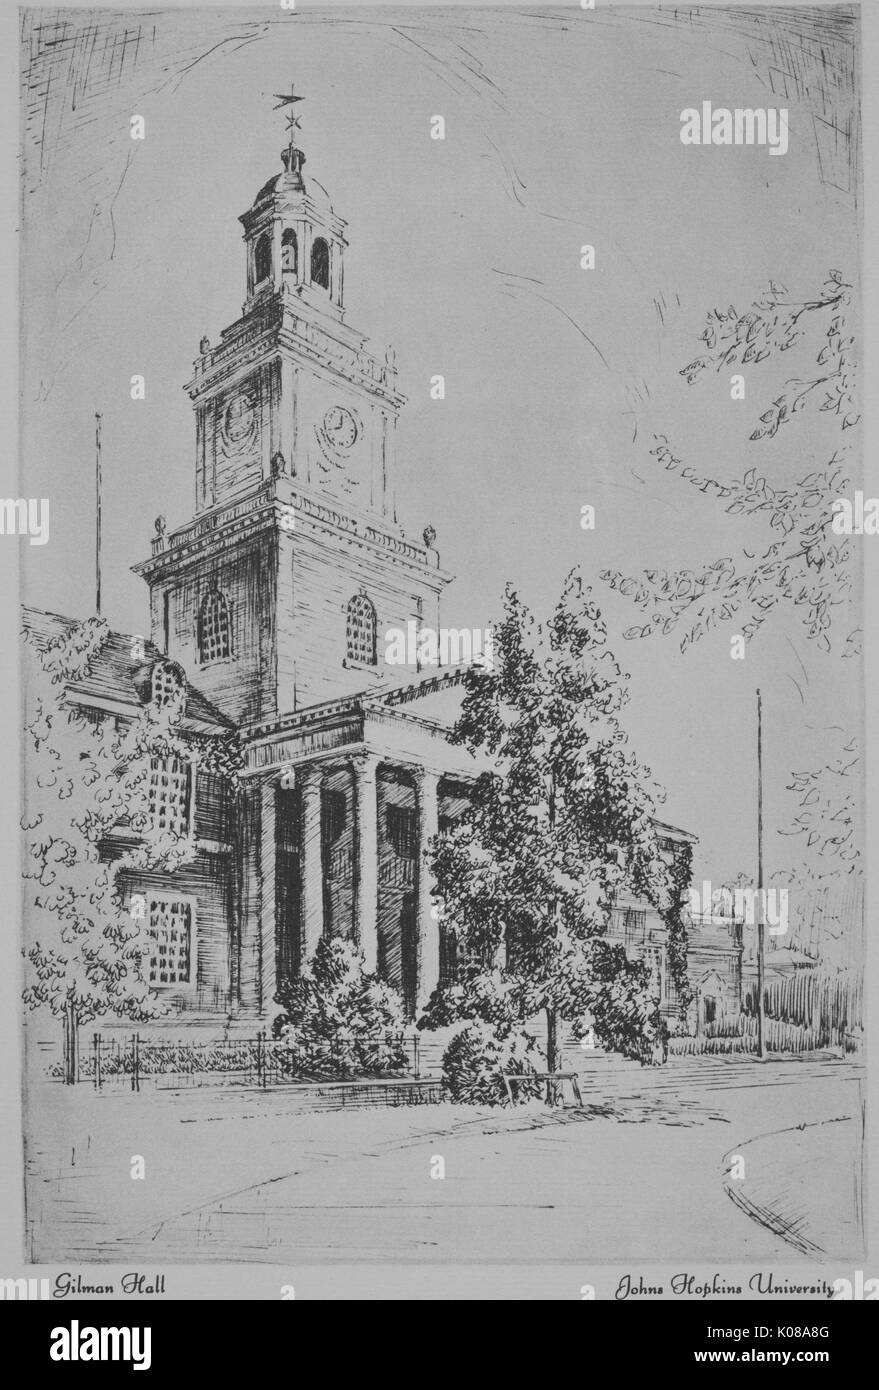 La stampa di un bozzetto di Gilman Hall su Homewood campus della Johns Hopkins University di Baltimore, Maryland, mostra di architettura e paesaggio, 1915. Foto Stock